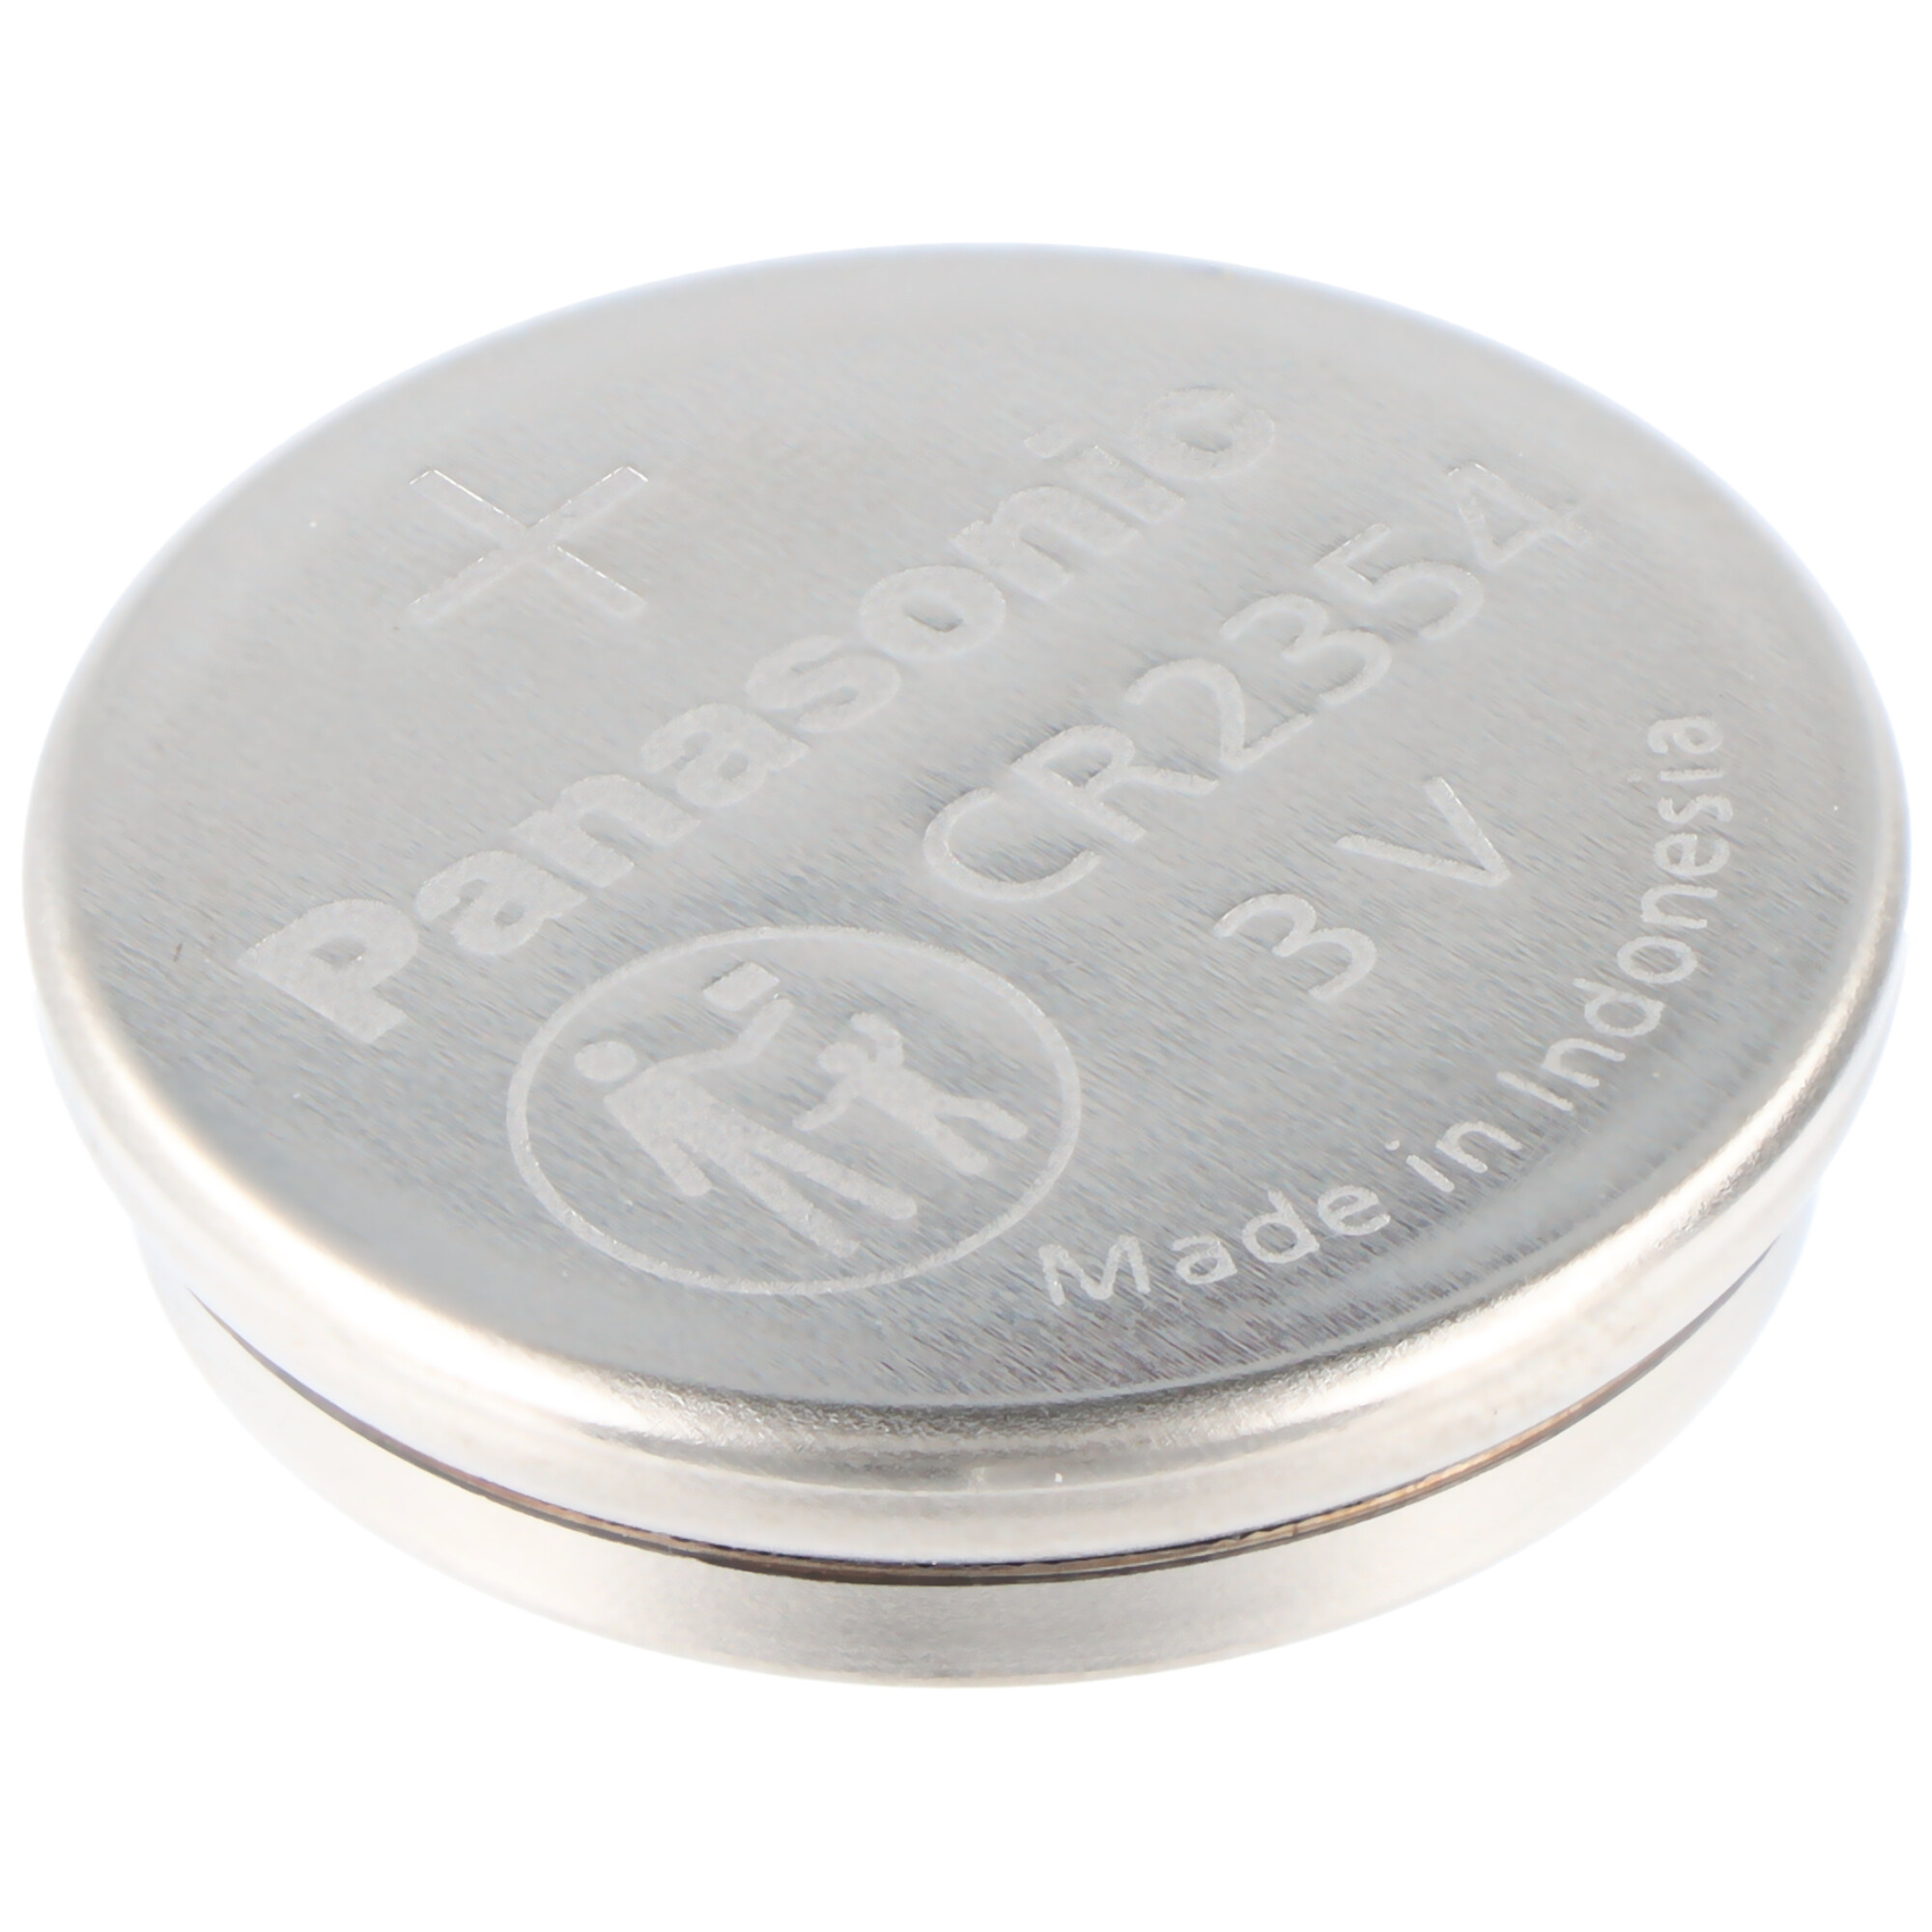 Panasonic Lithium Batterie CR2354 im preiswerten 5er Set